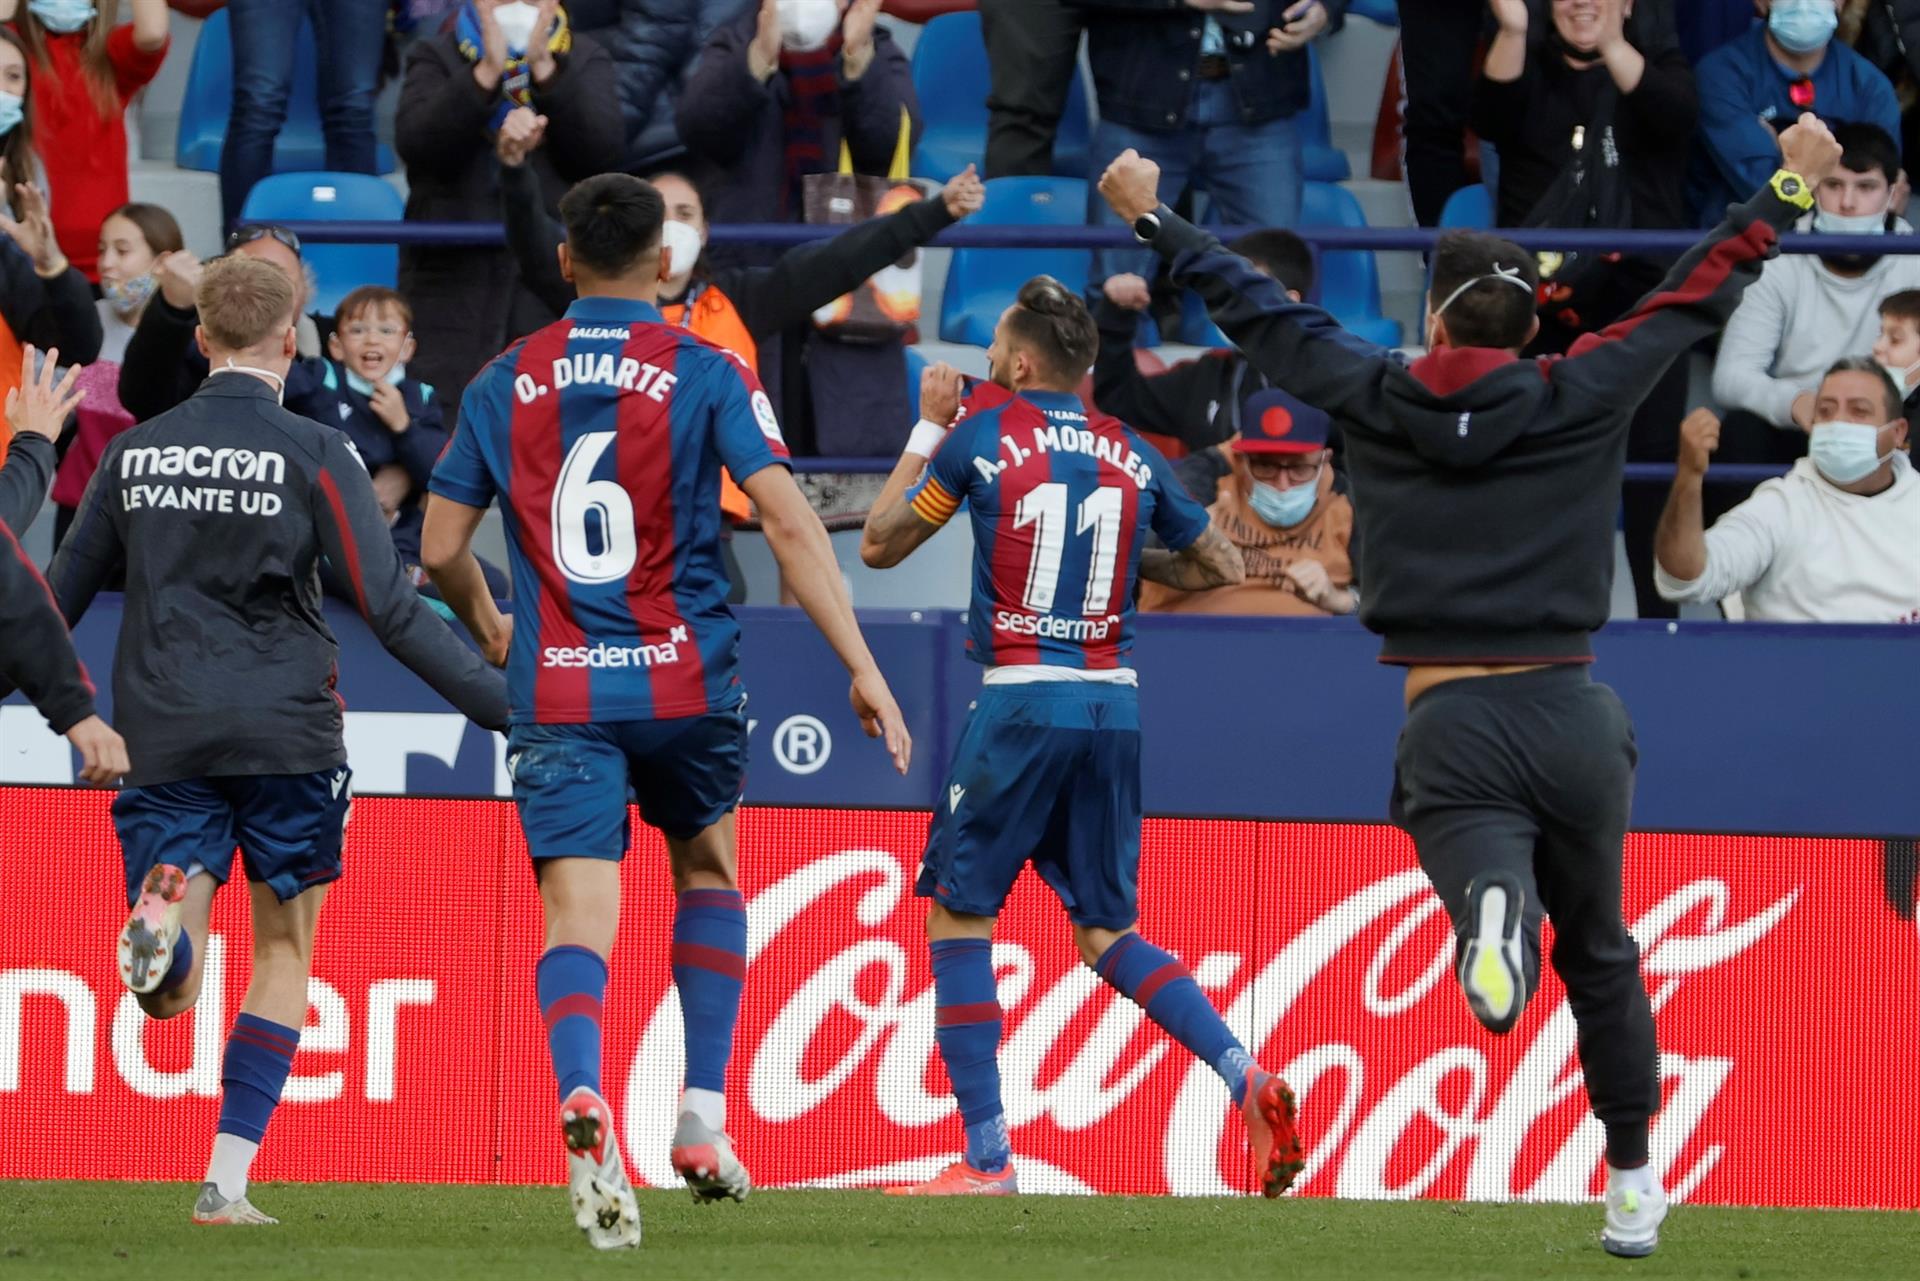 El Levante gana su primer partido de la temporada (2-0)